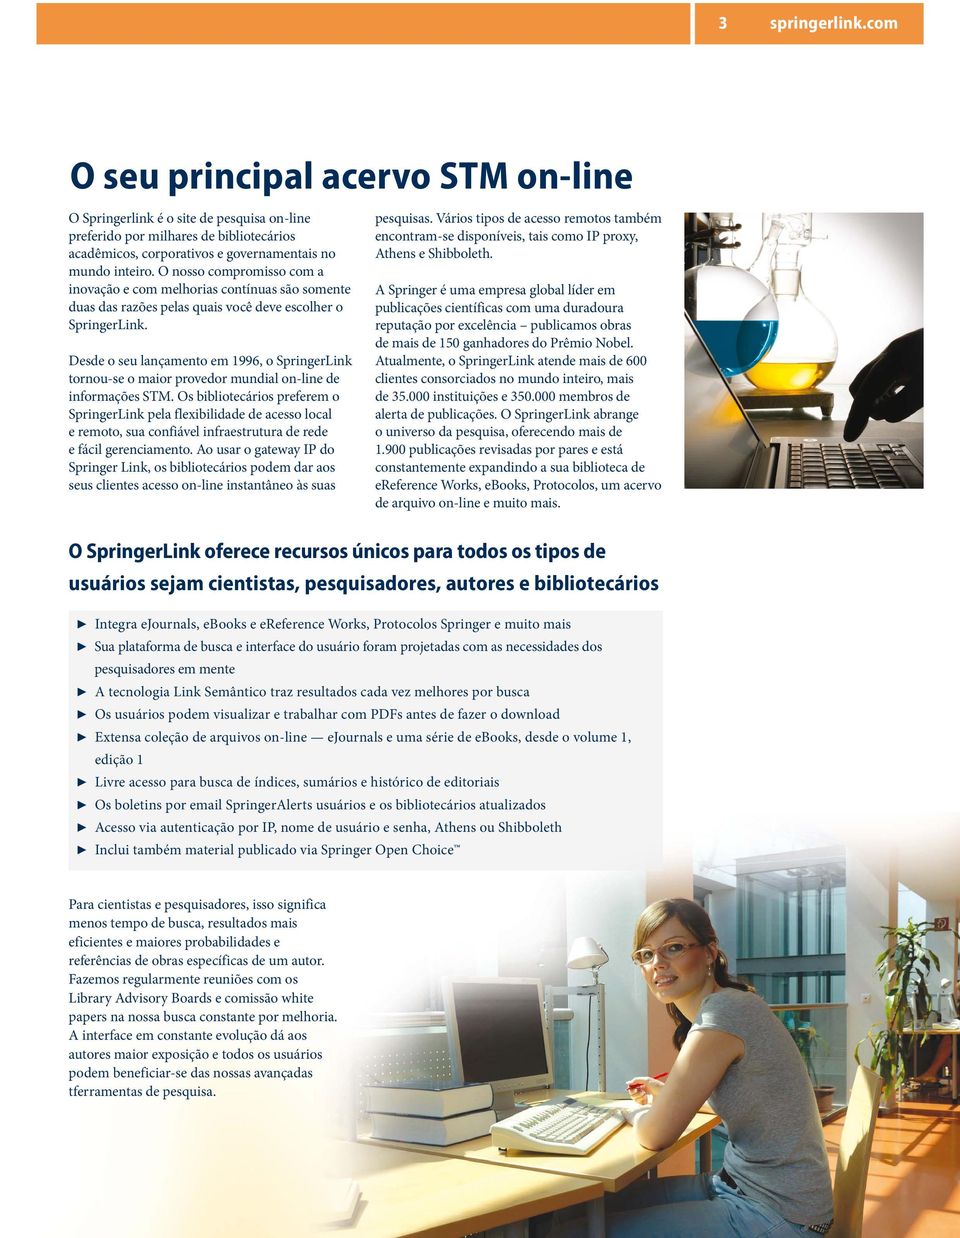 Desde o seu lançamento em 1996, o SpringerLink tornou-se o maior provedor mundial on-line de informações STM.